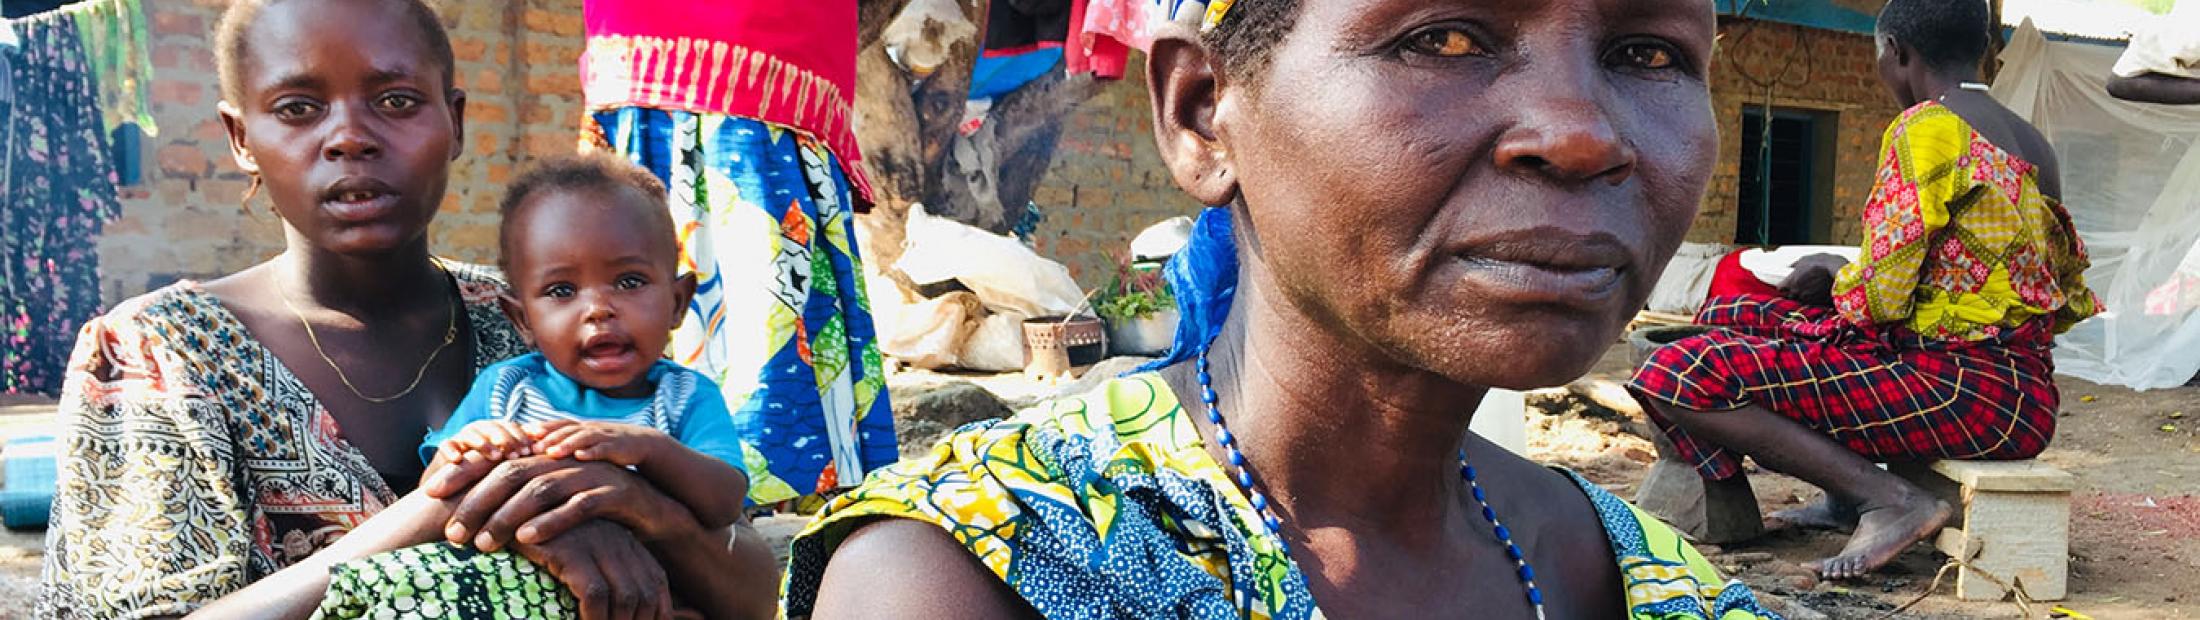 Familias rotas por la violencia en República Democrática del Congo